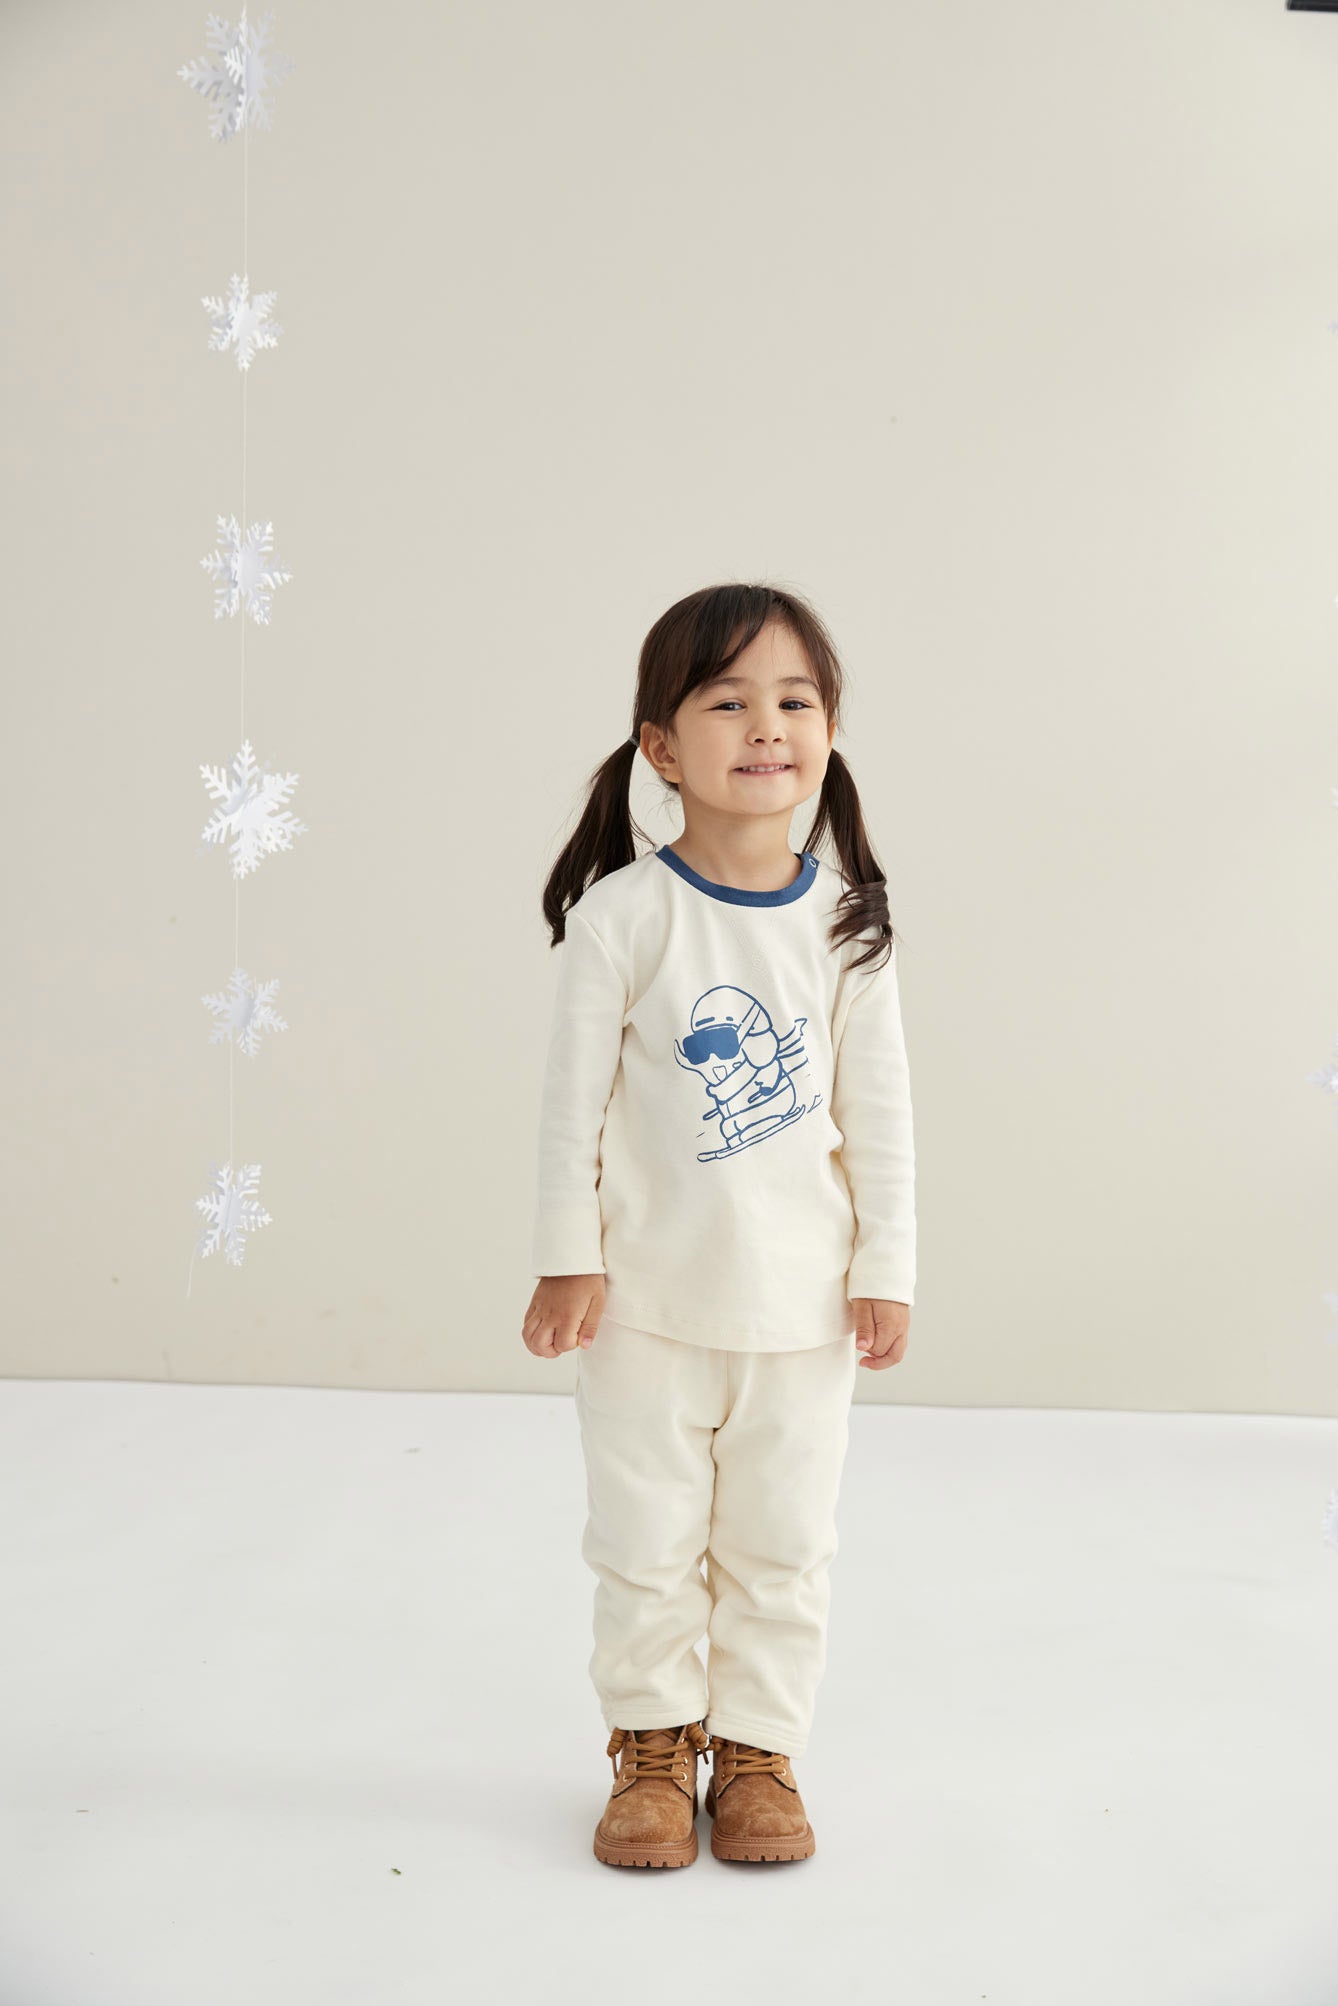 Toddler Organic Long Sleeve Tee Shirt-Ski with pairing pants